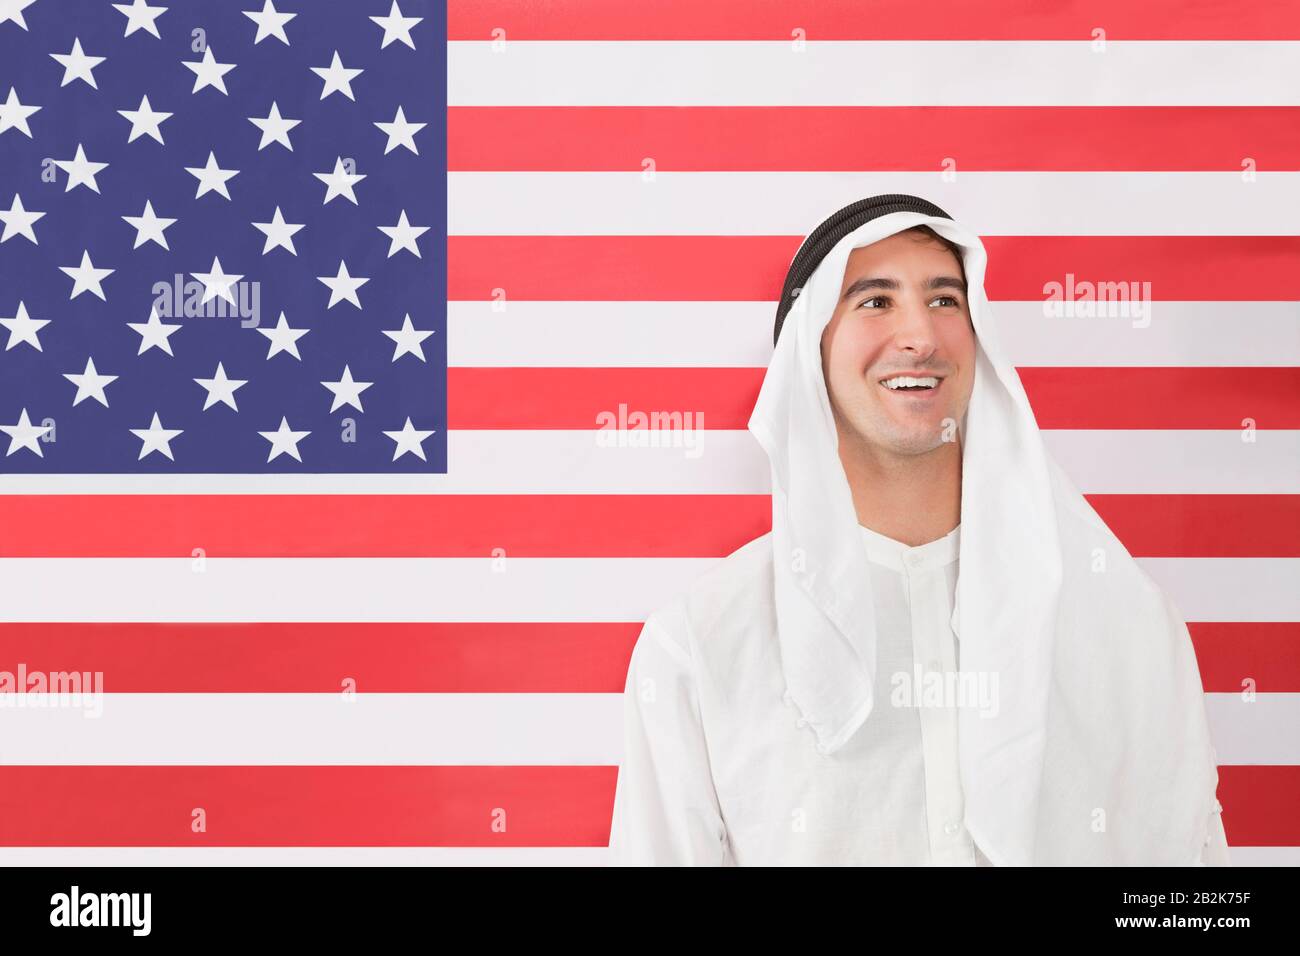 Un homme arabe dans des vêtements traditionnels regardant contre le drapeau américain Banque D'Images